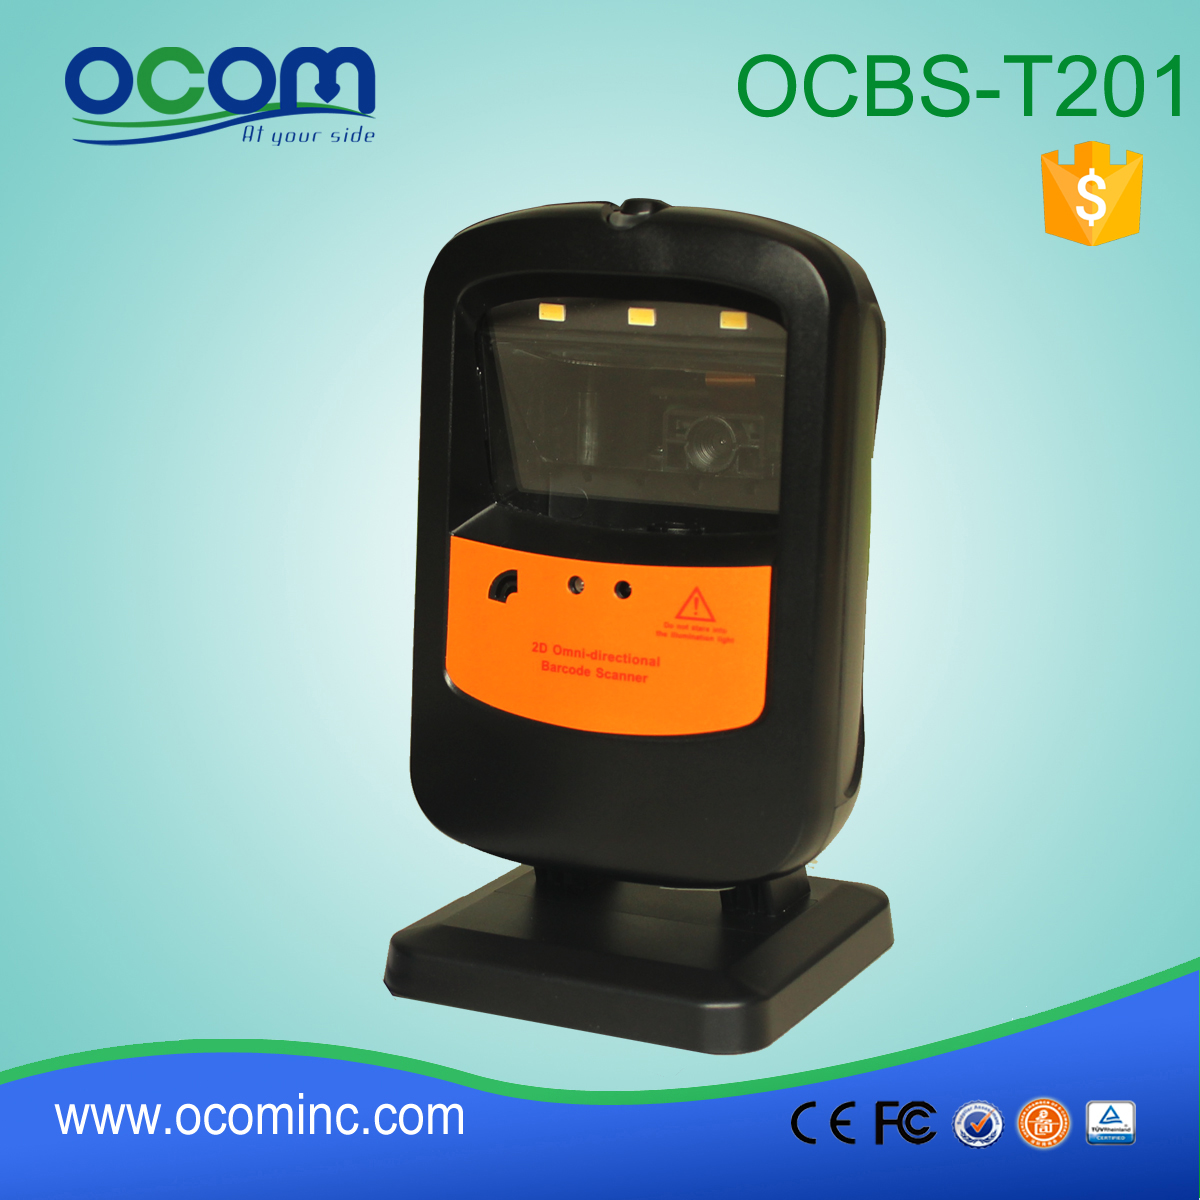 OCBS-T201: módulo lector de código de barras 2D, lector de código de barras de manos libres